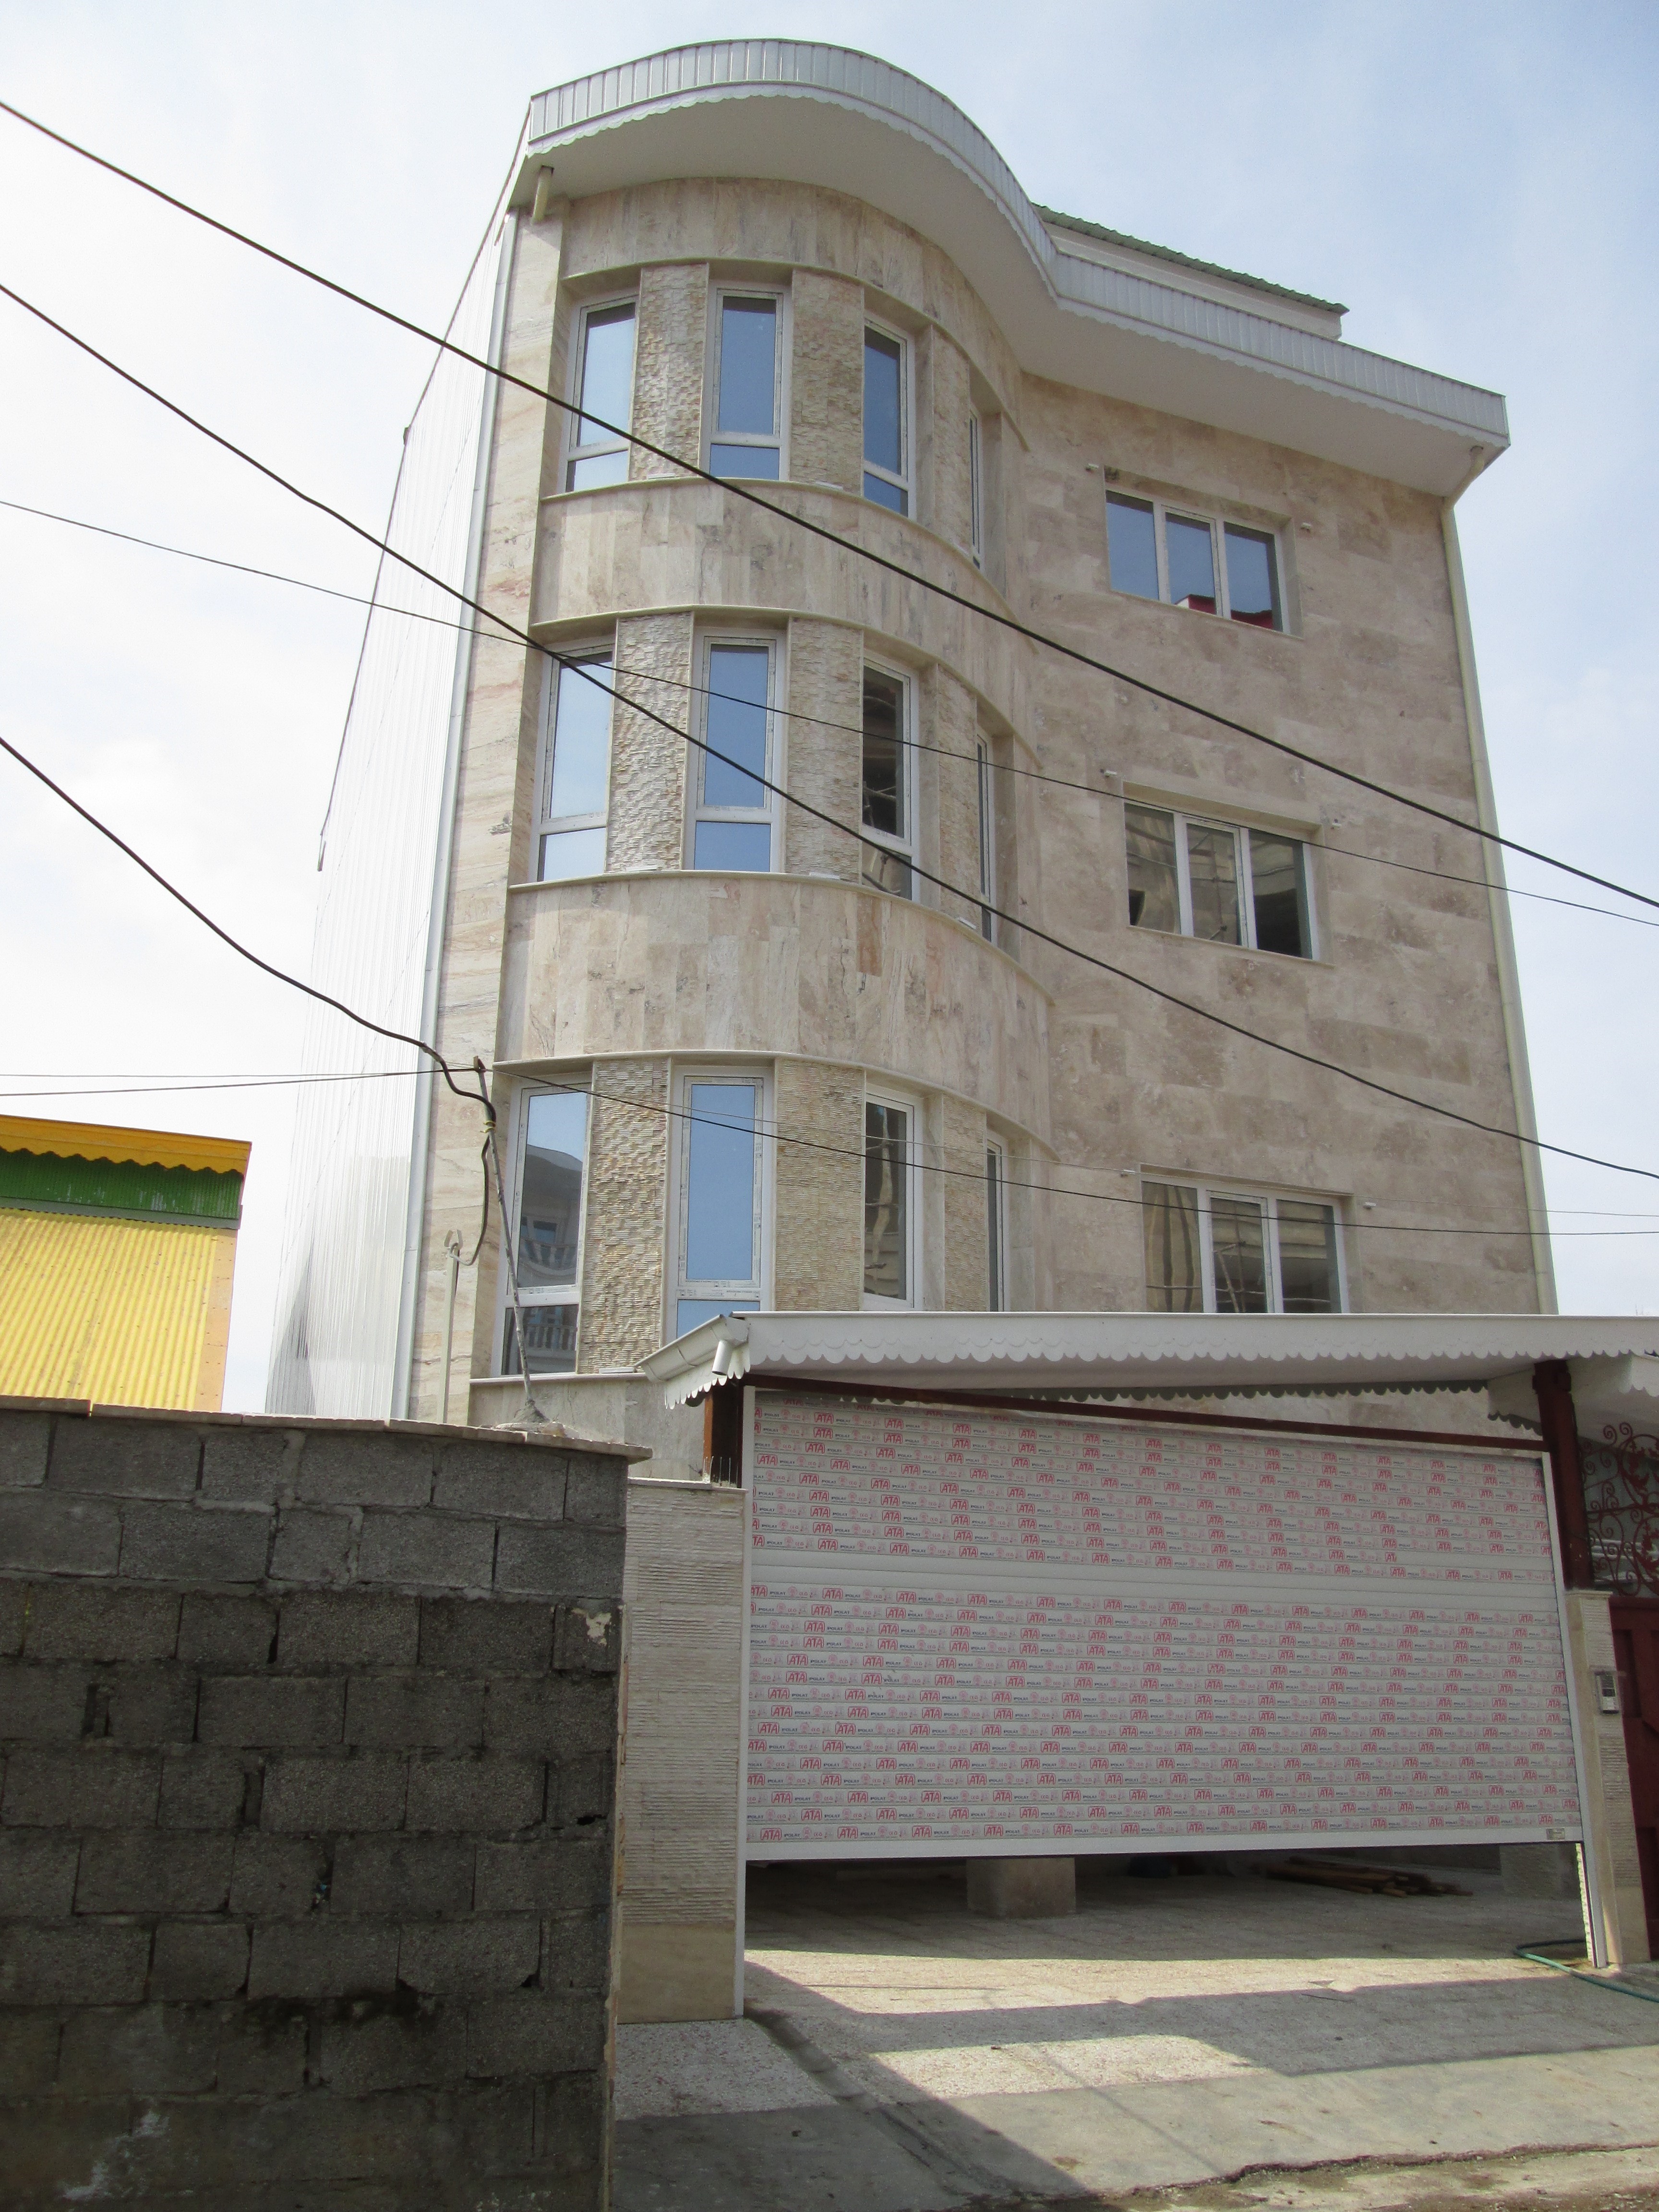 فروش آپارتمان سه طبقه سه واحدی در منطقه آزاد(کد:۵۵۷)